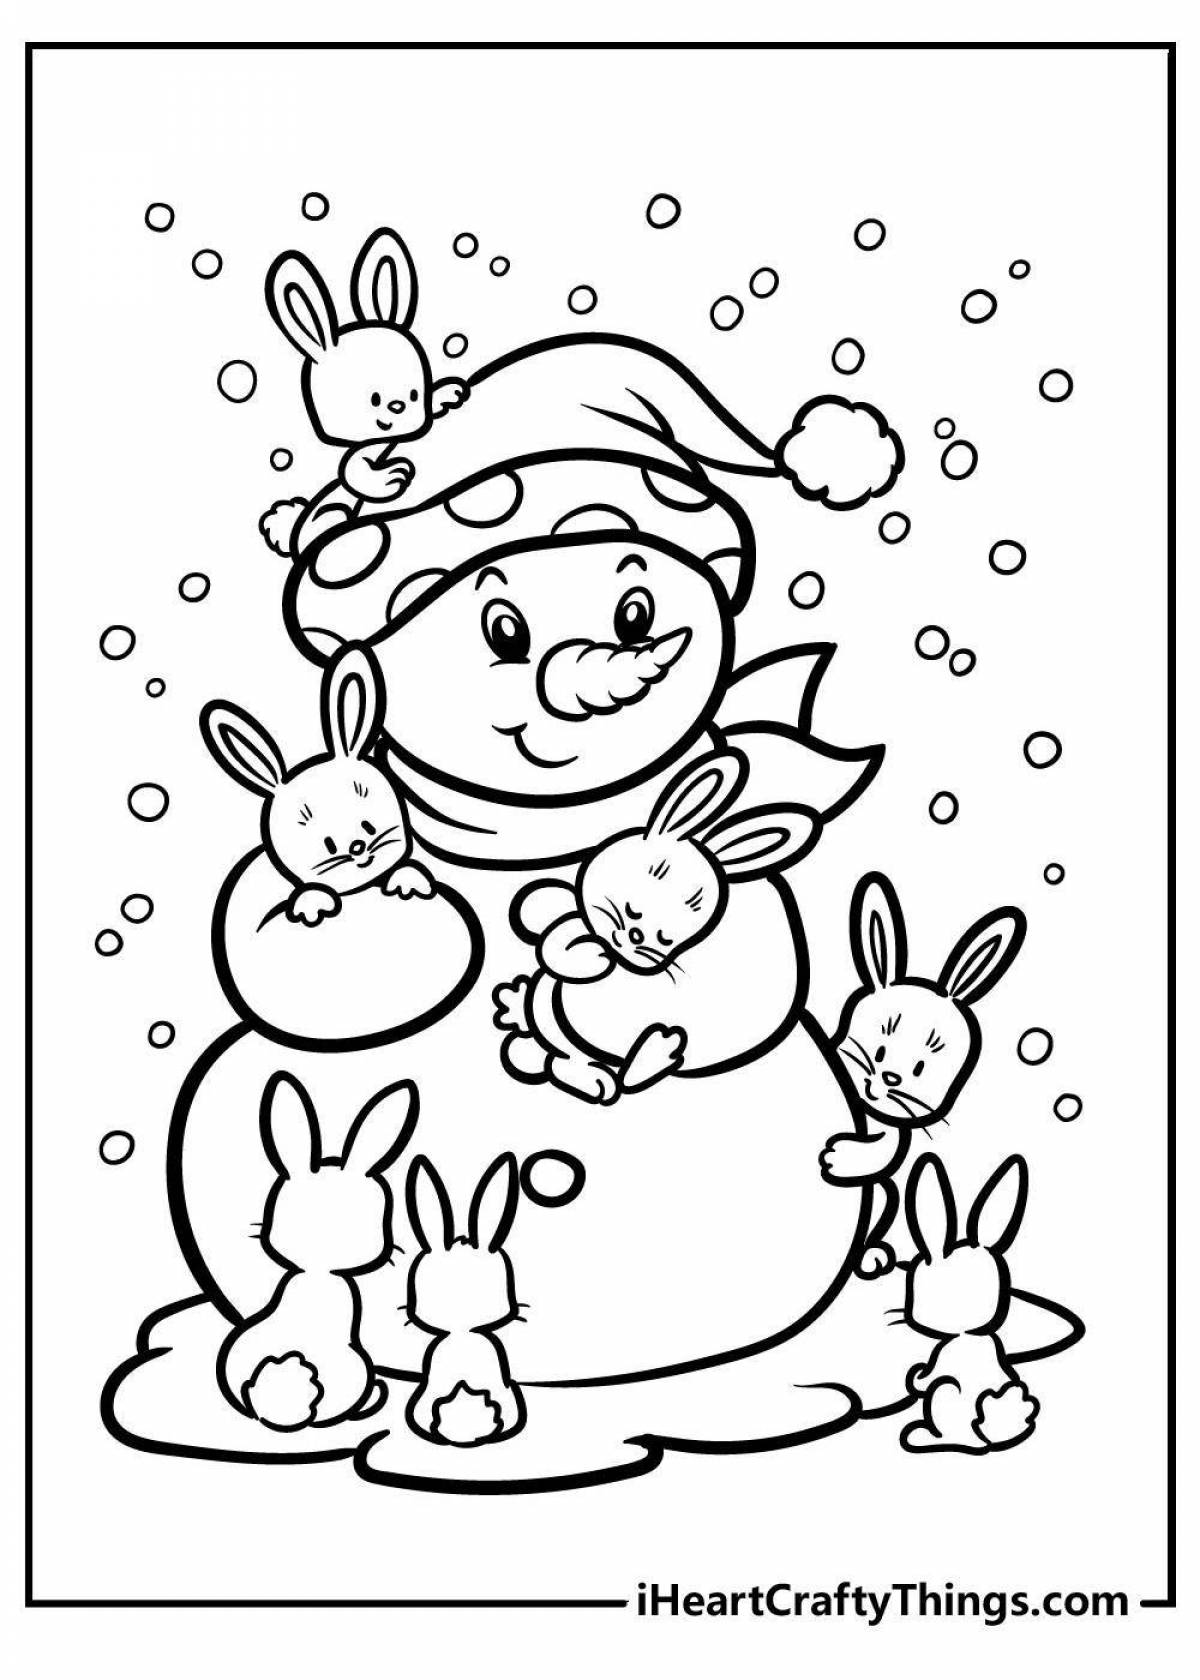 Радостный кролик раскраски новый год